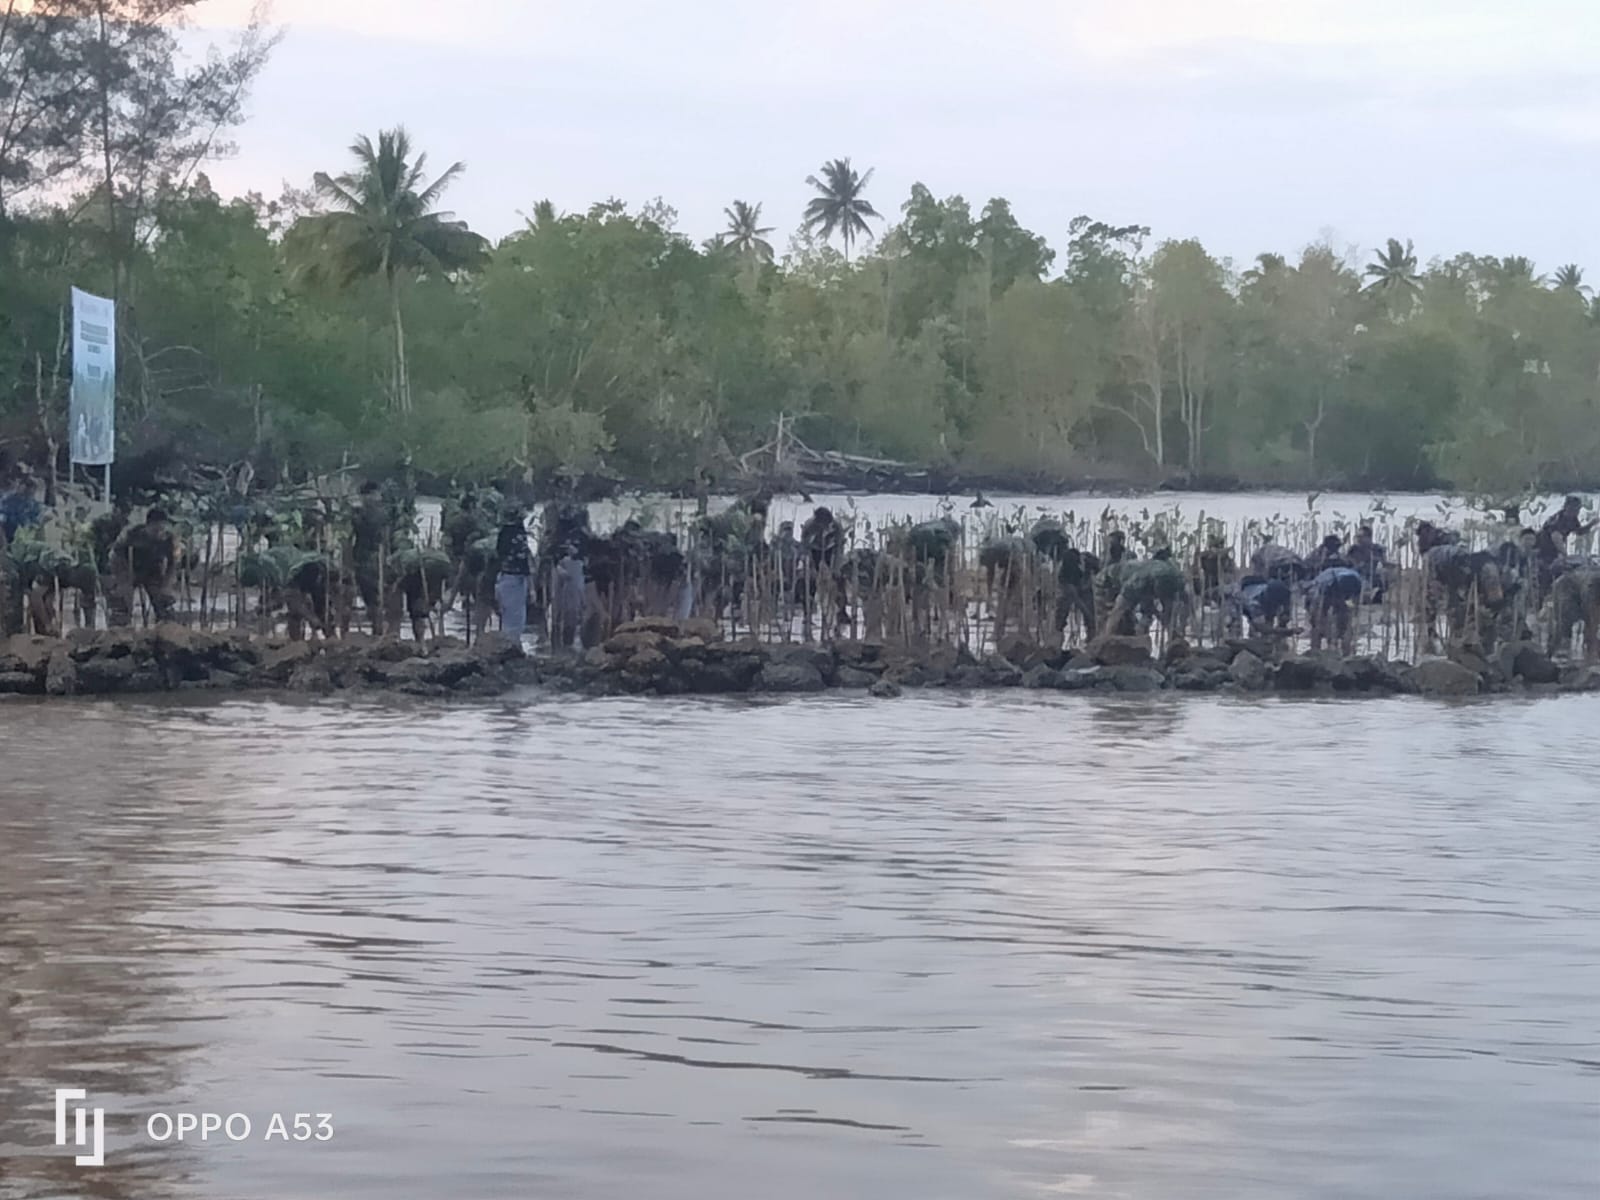 Read more about the article Kegiatan Penanaman Mangrove Nasional di Pantai Lamaru Balikpapan